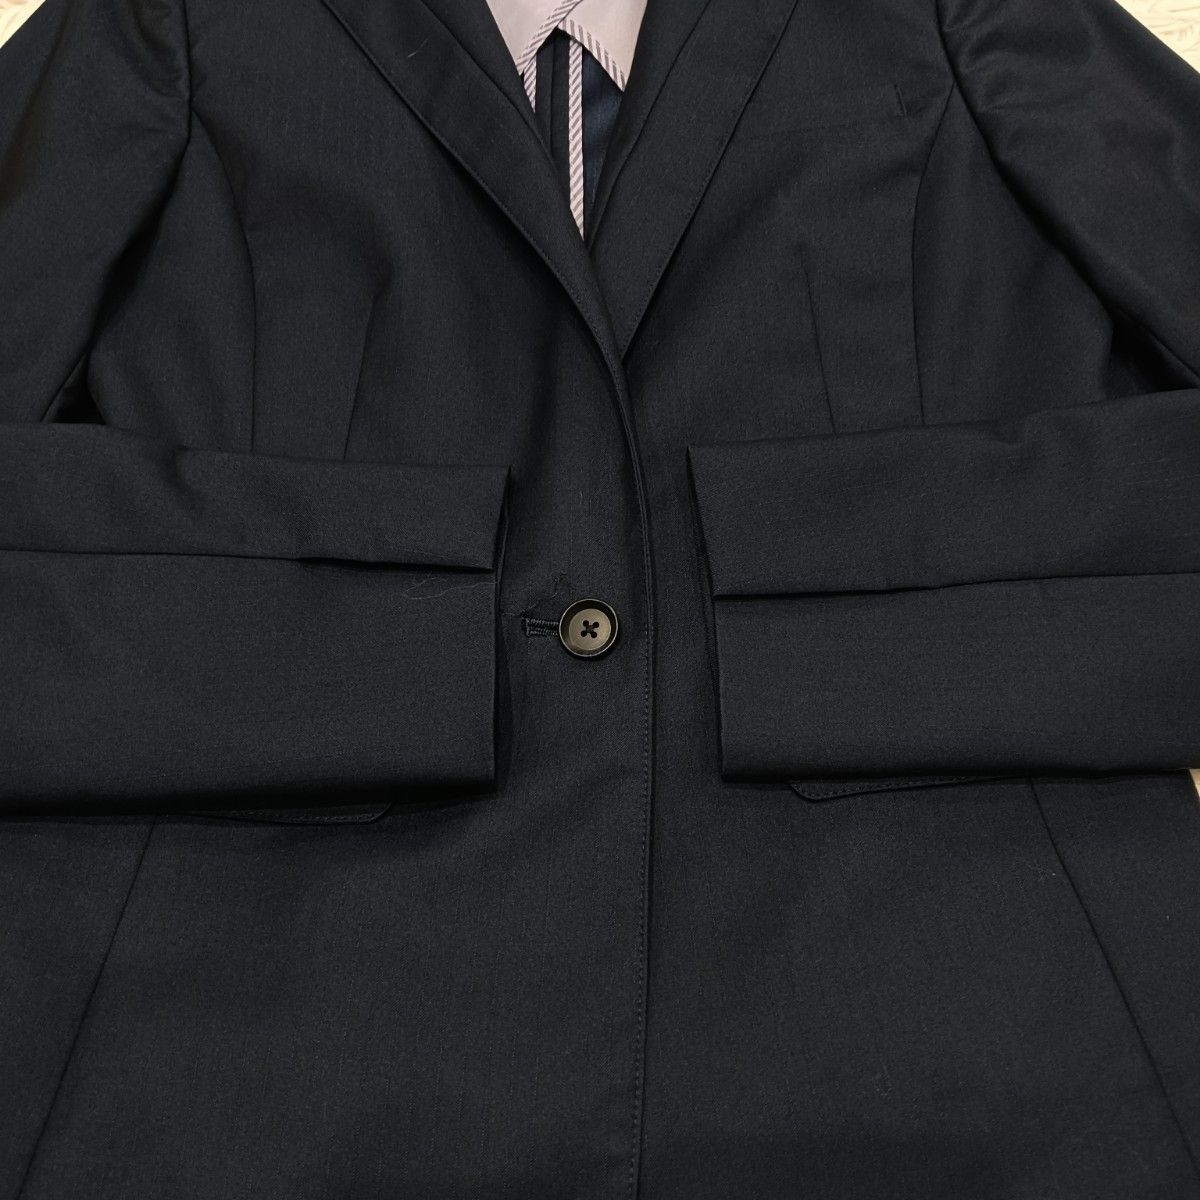 SUIT SELECT スーツセレクト パンツスーツ パンツ セットアップ ビジネス オフィス 